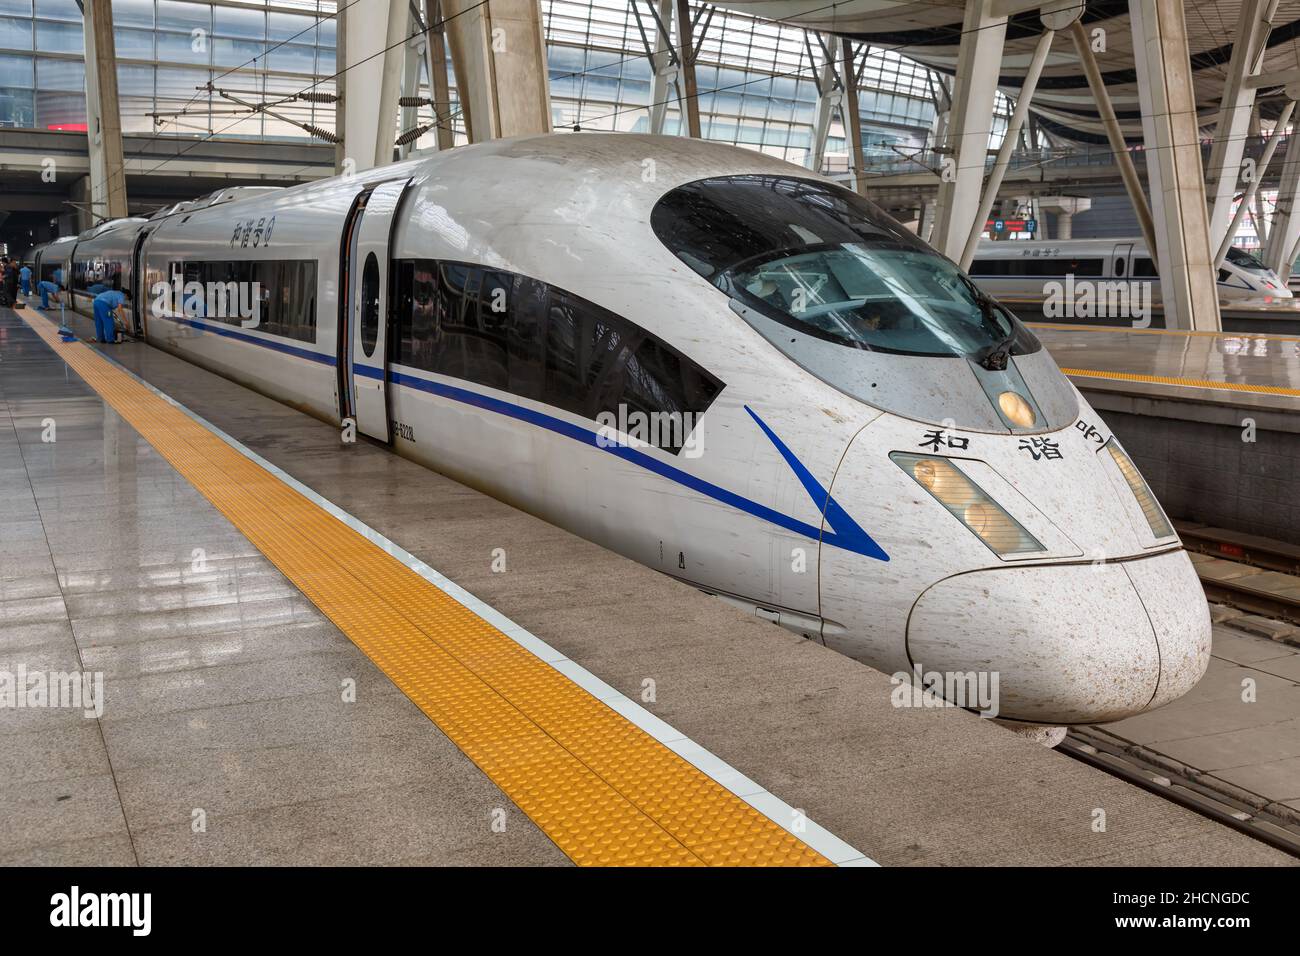 Pechino, Cina - 18 settembre 2013: Treno ad alta velocità Siemens Velaro CN CRH3 alla stazione ferroviaria di Pechino Sud in Cina. Foto Stock